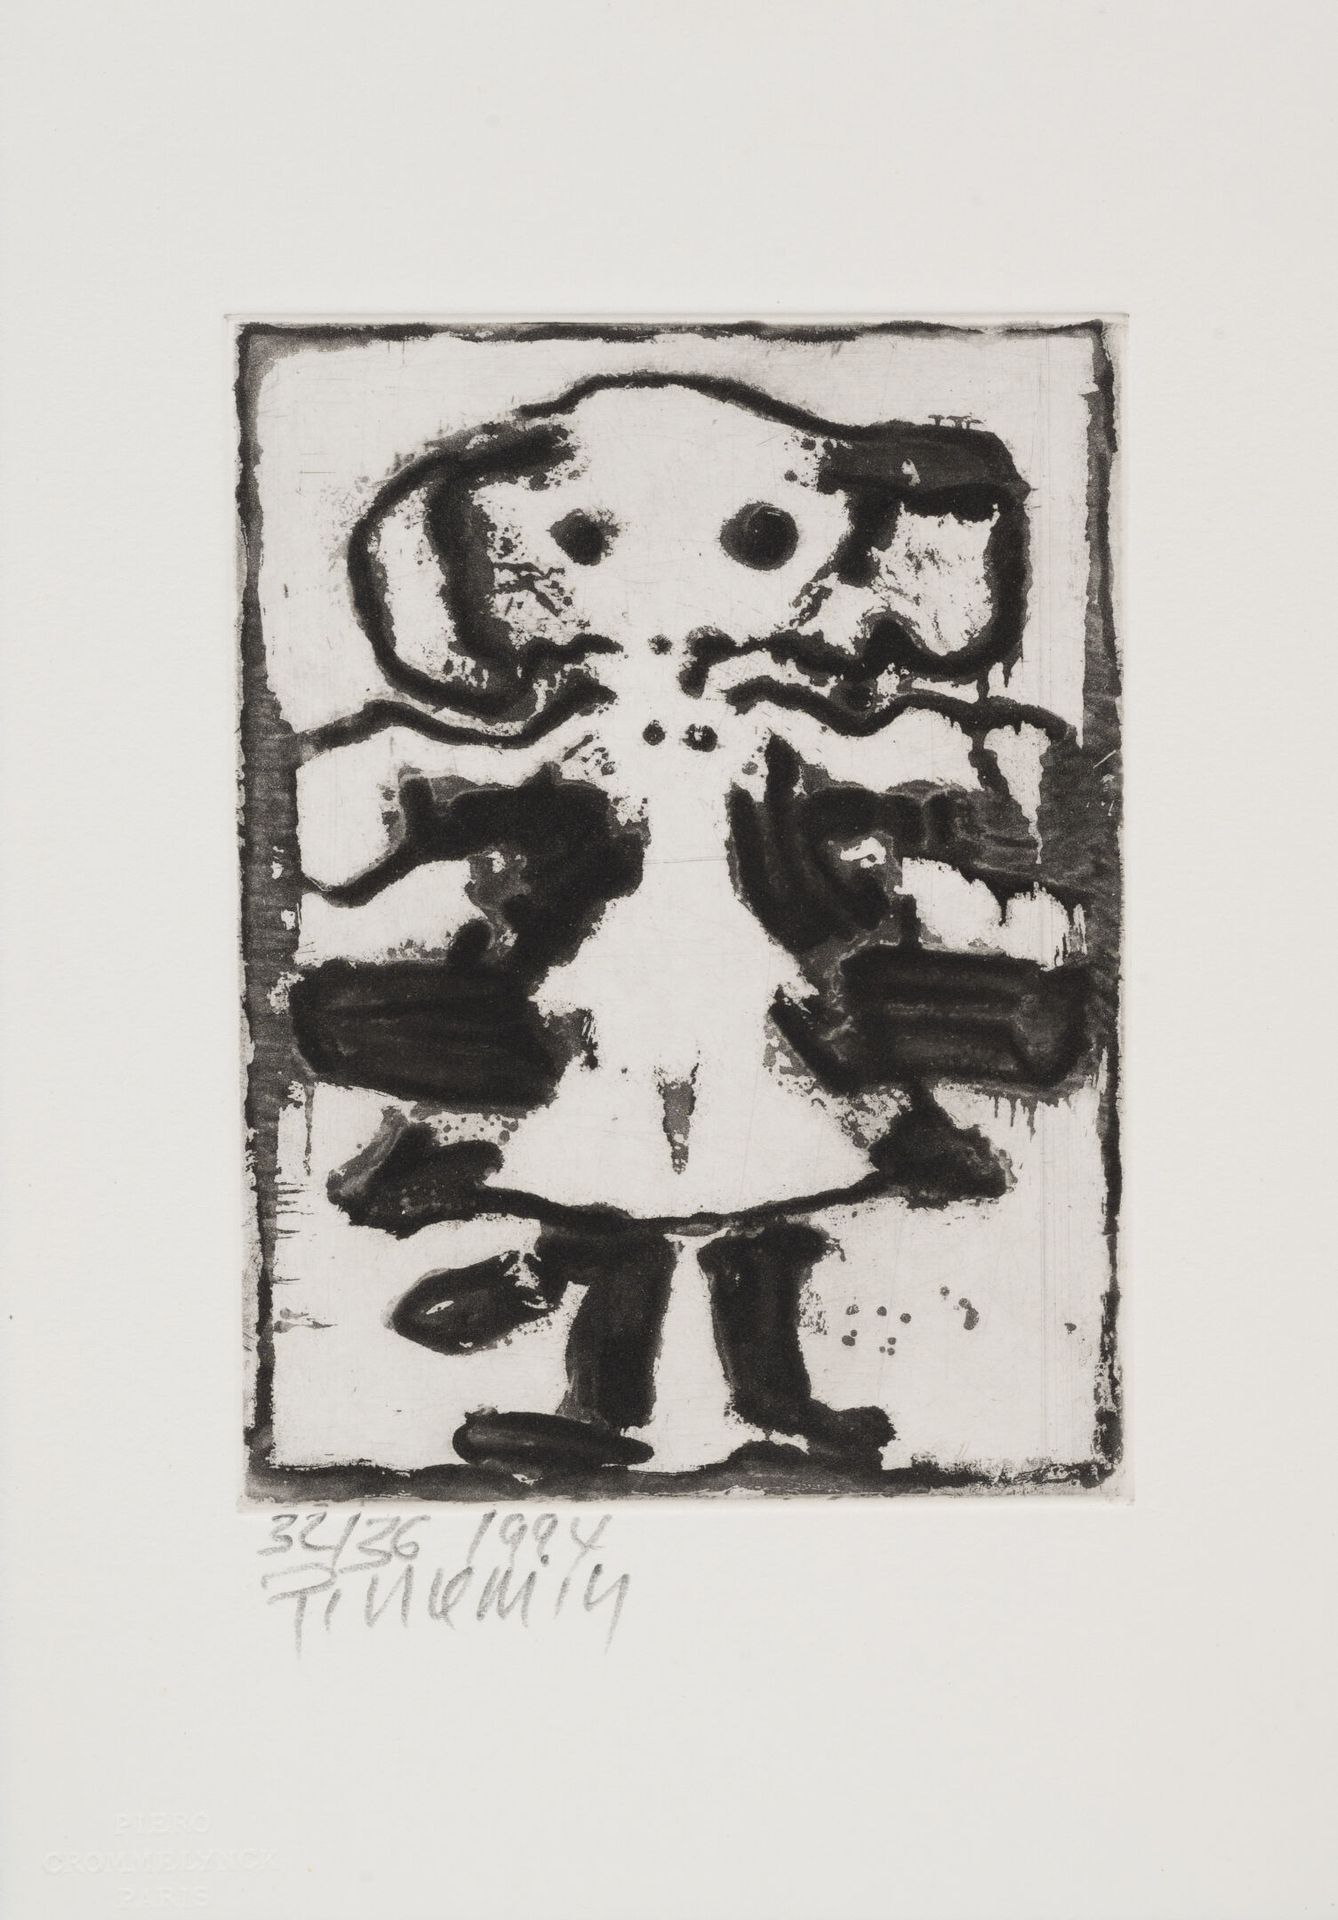 Jean-Pierre PINCEMIN (1944-2005) 无题》，1994年。
纸上蚀刻画。
底部有签名和编号32/36。
22,5 x 16厘米。